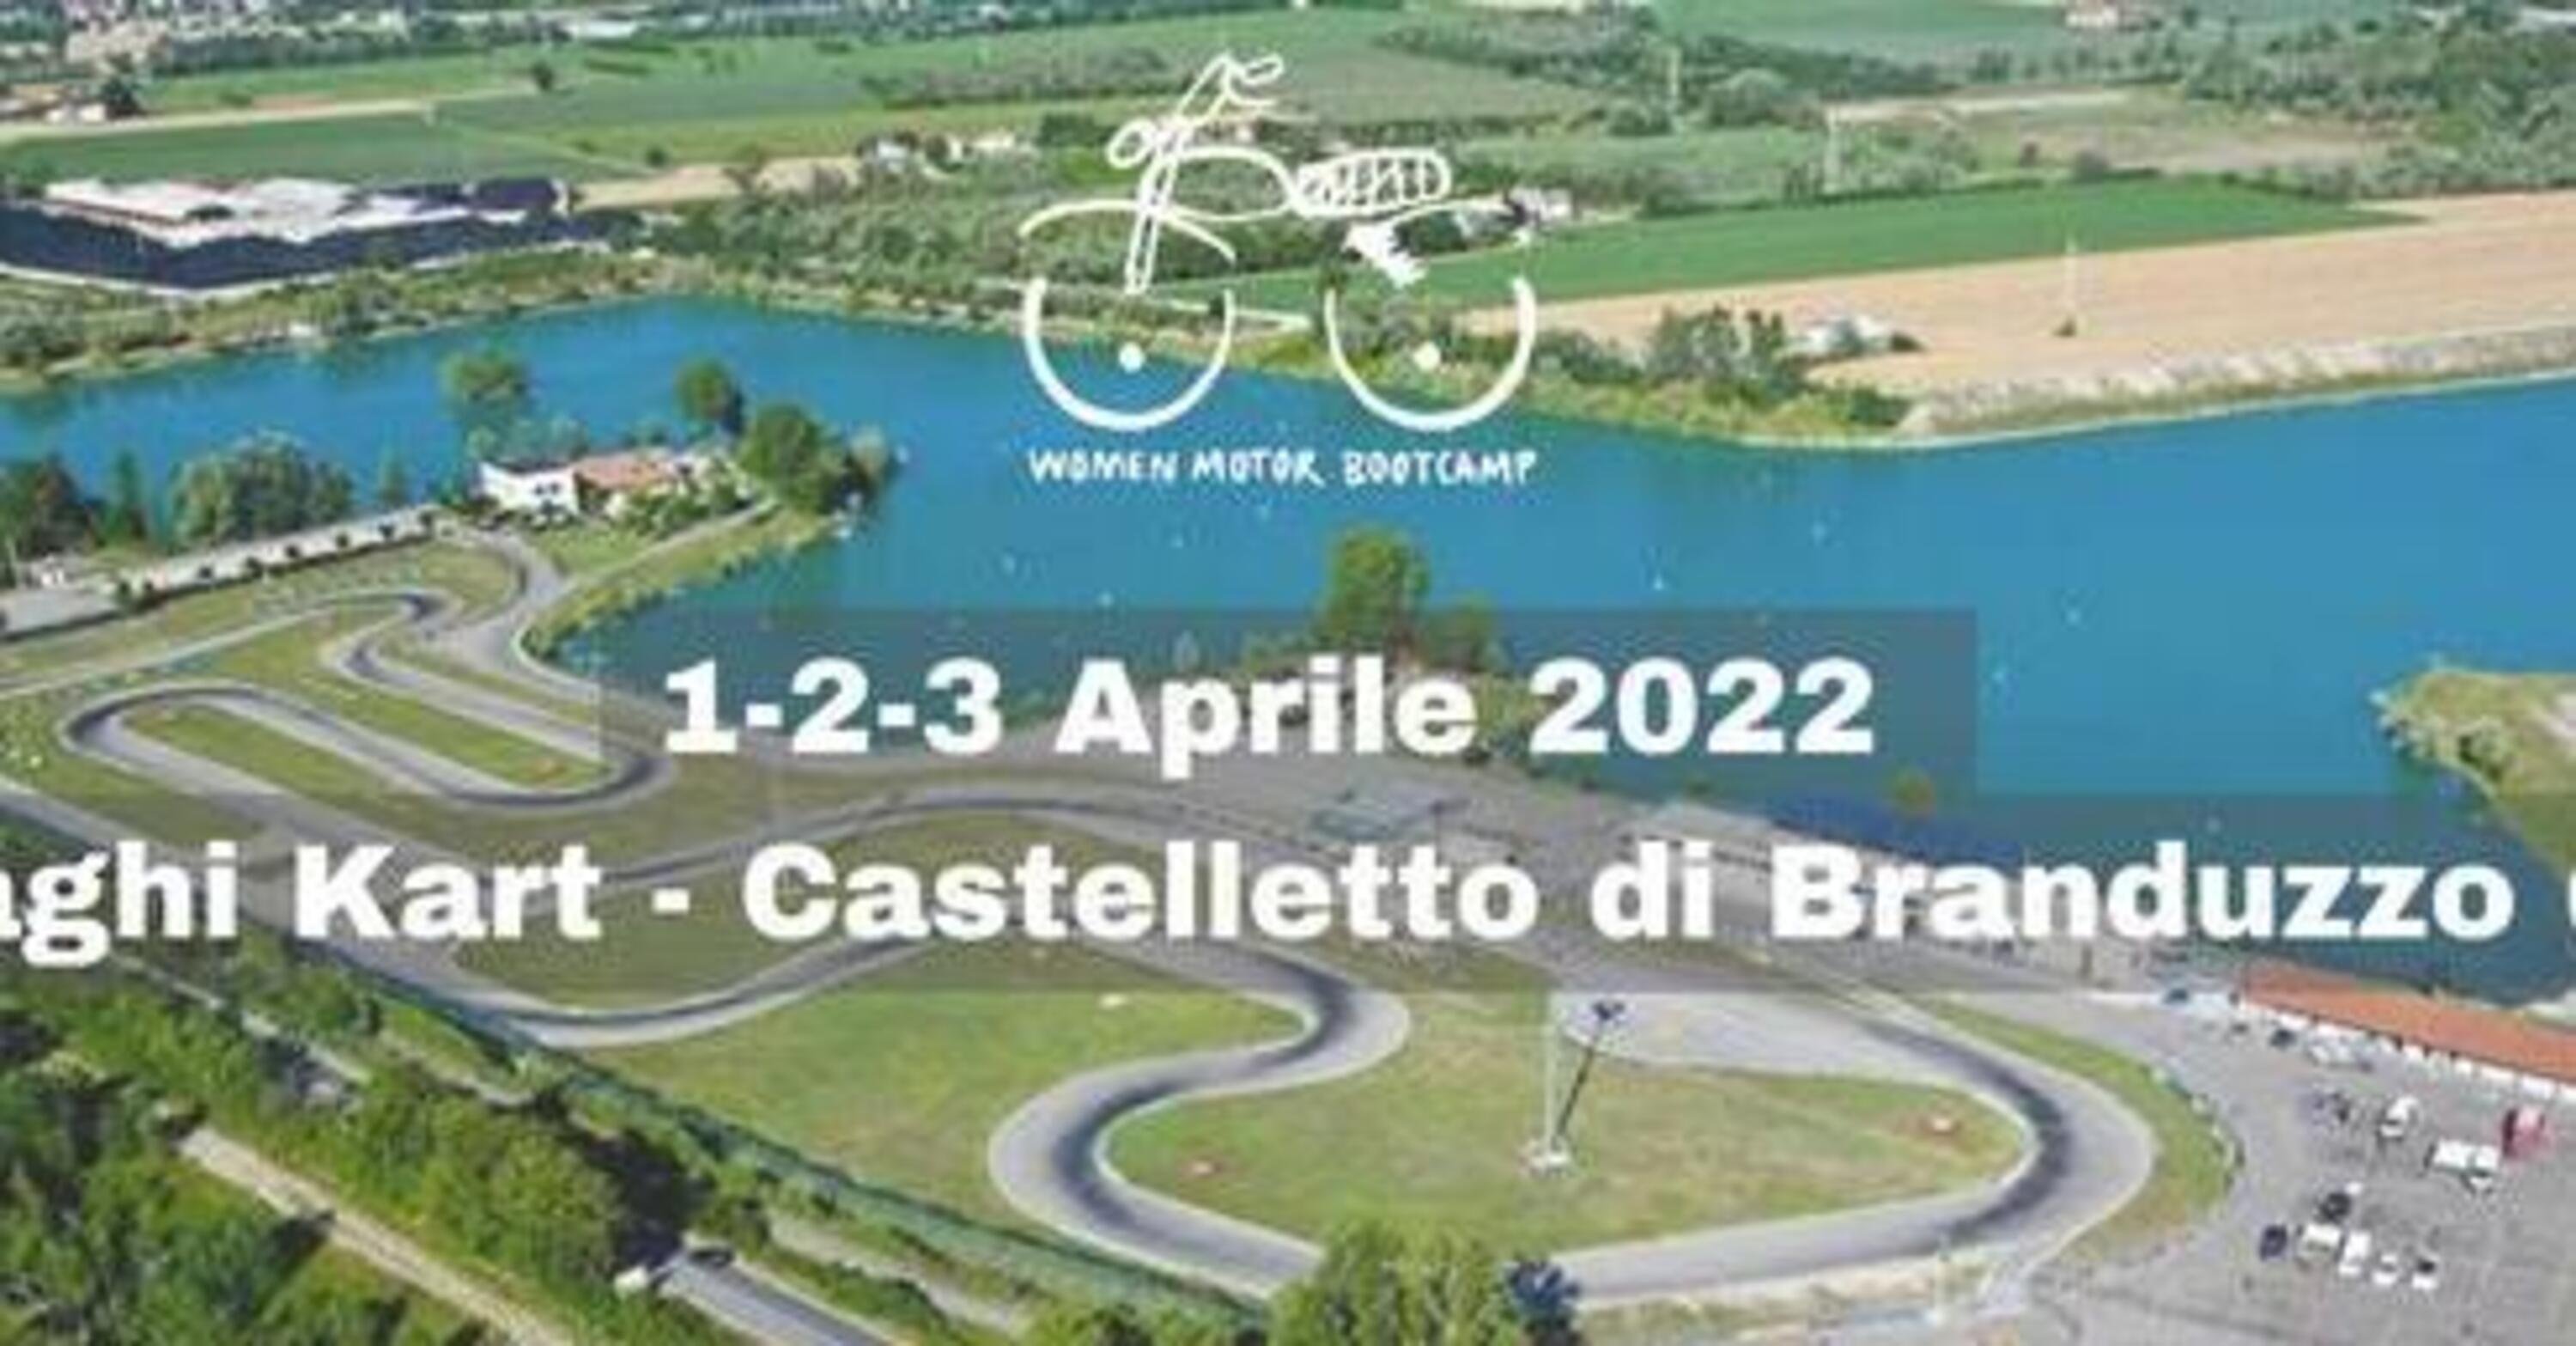 WMB Road Edition confermato nella nuova location: Castelletto di Branduzzo